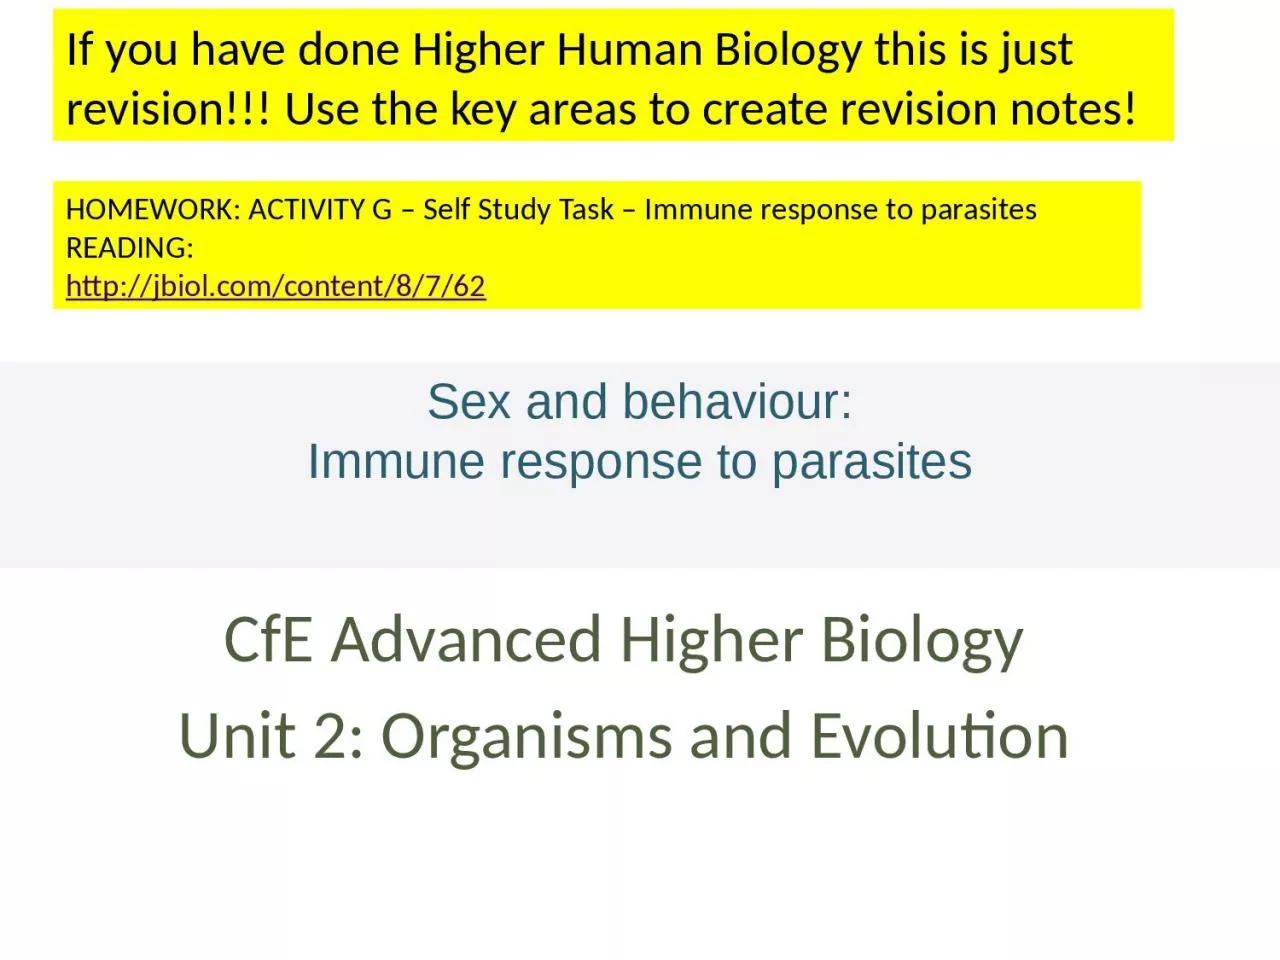 Sex and behaviour: Immune response to parasites